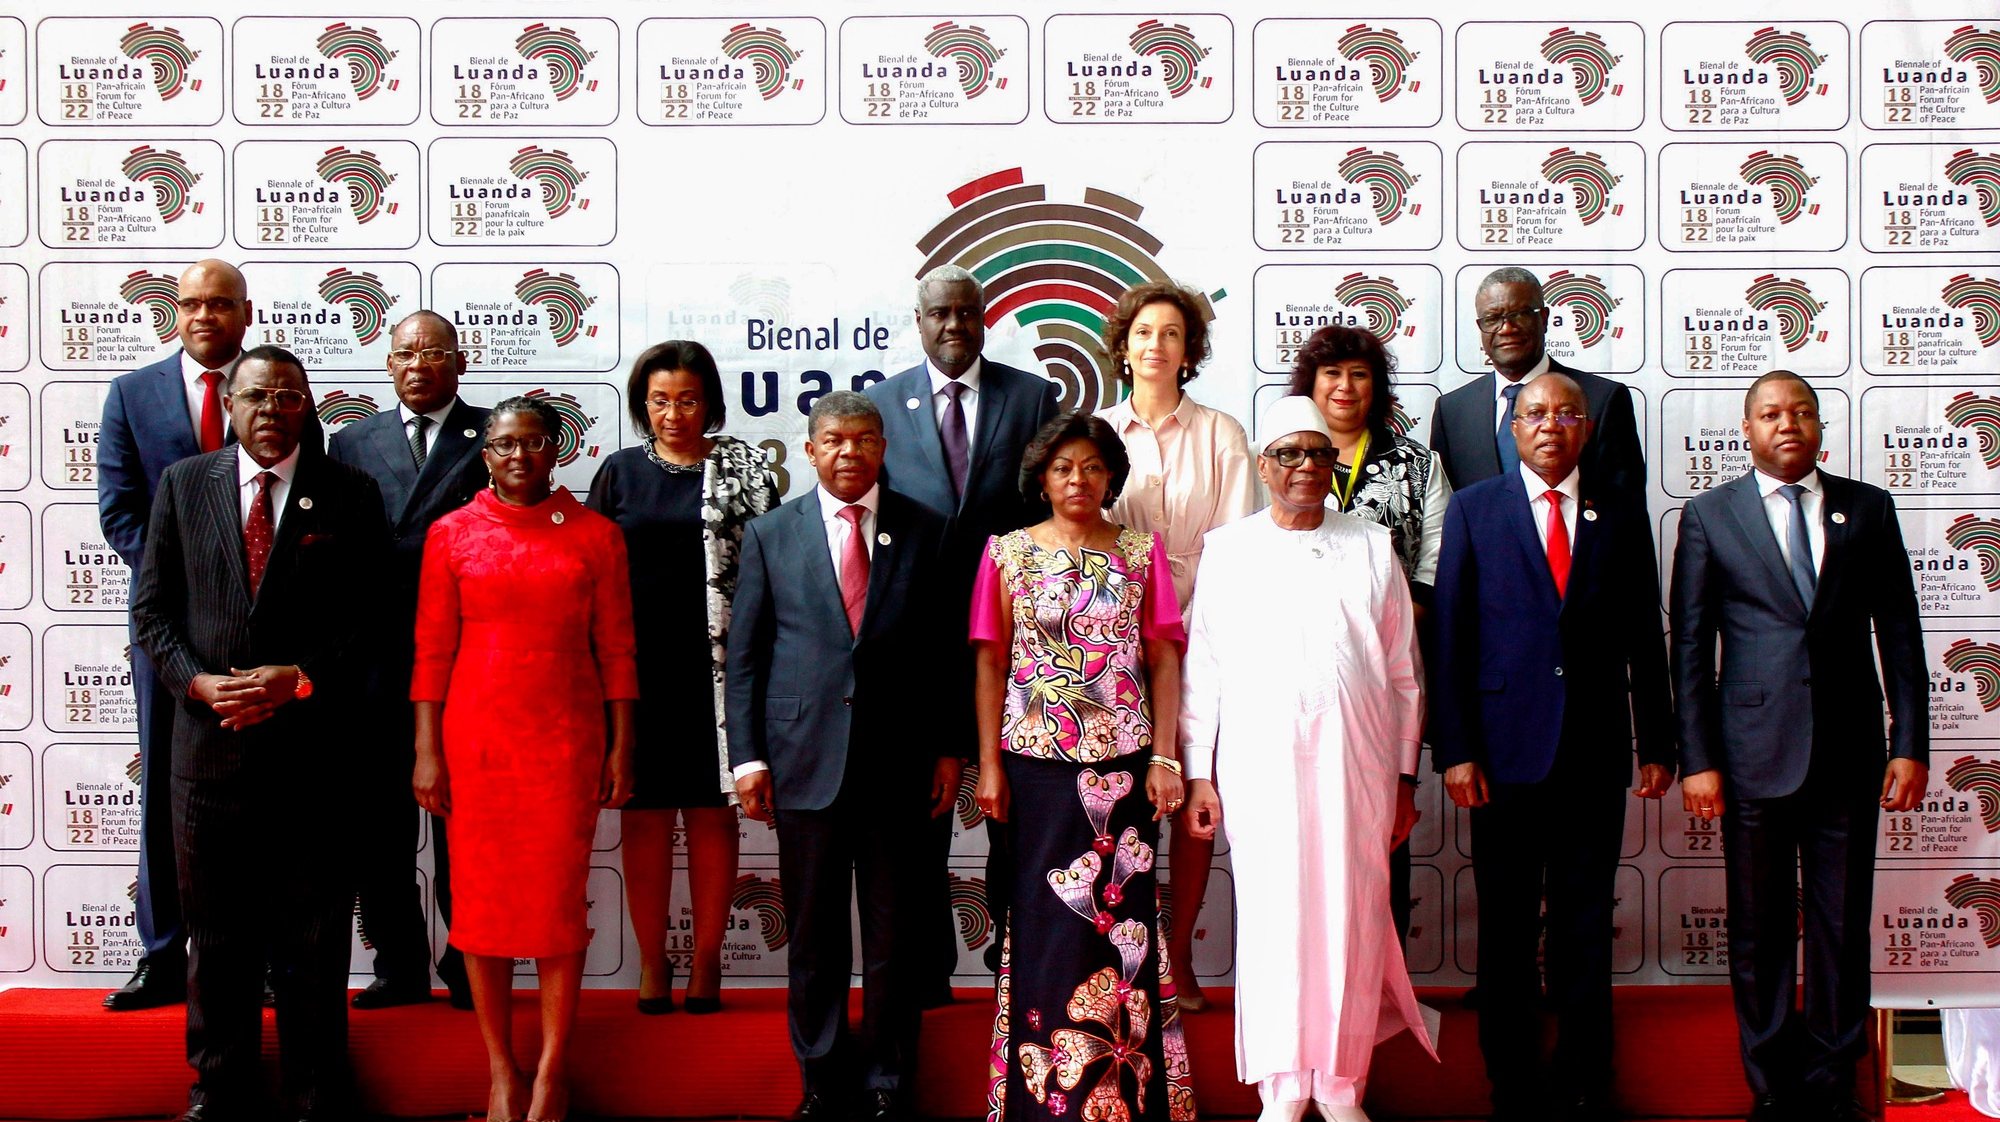 O Presidente da República de Angola, João Lourenço (C-E), posa para a fotografia de família durante a abertura oficial da Bienal de Luanda - Fórum Pan-Africano para a Cultura de Paz, em Luanda, Angola, 18 de setembro de 2019. AMPE ROGÉRIO/LUSA